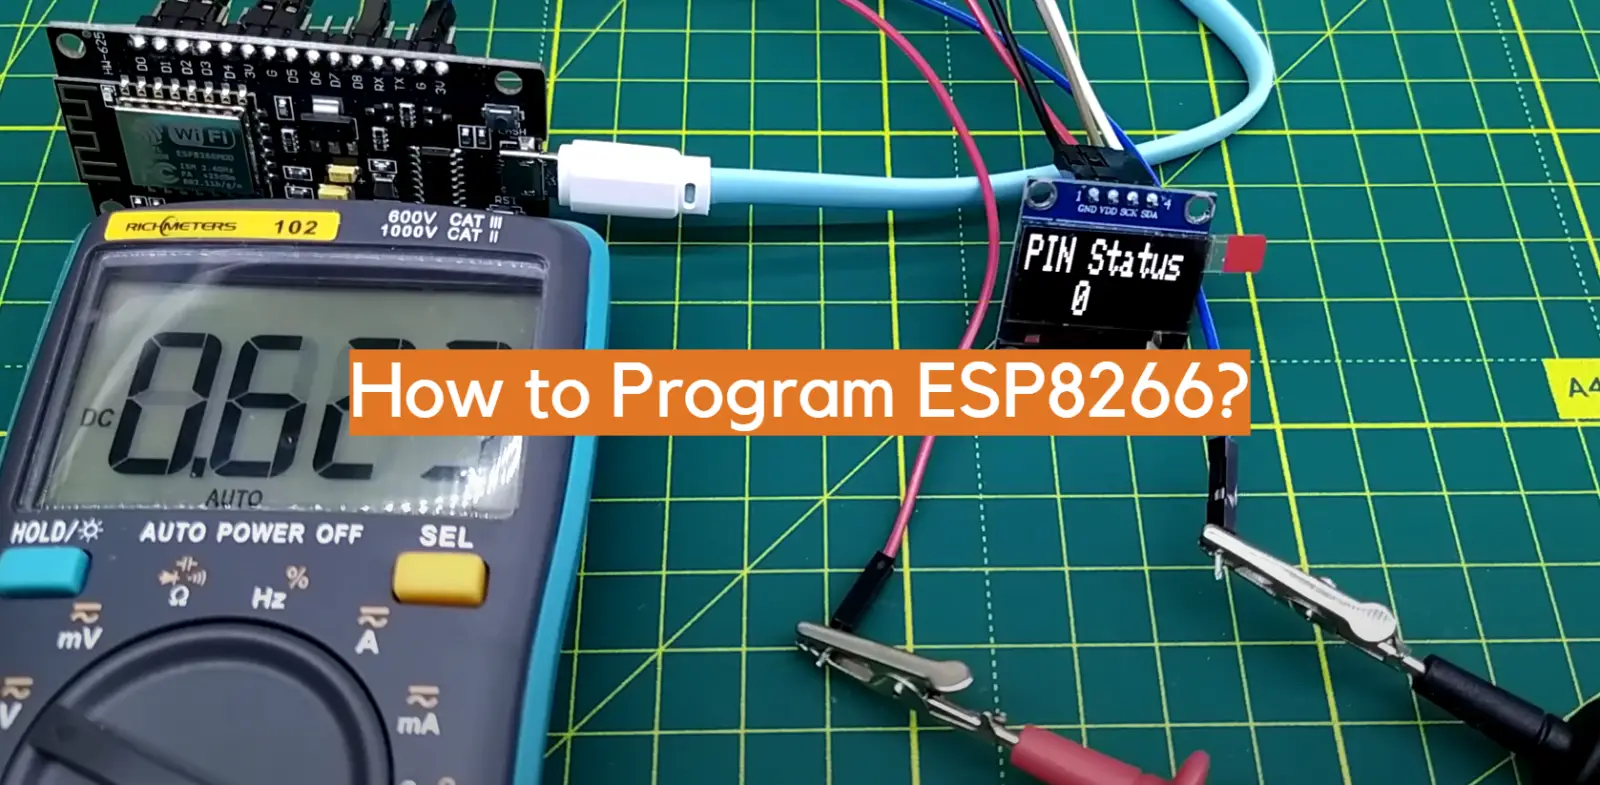 How to Program ESP8266?